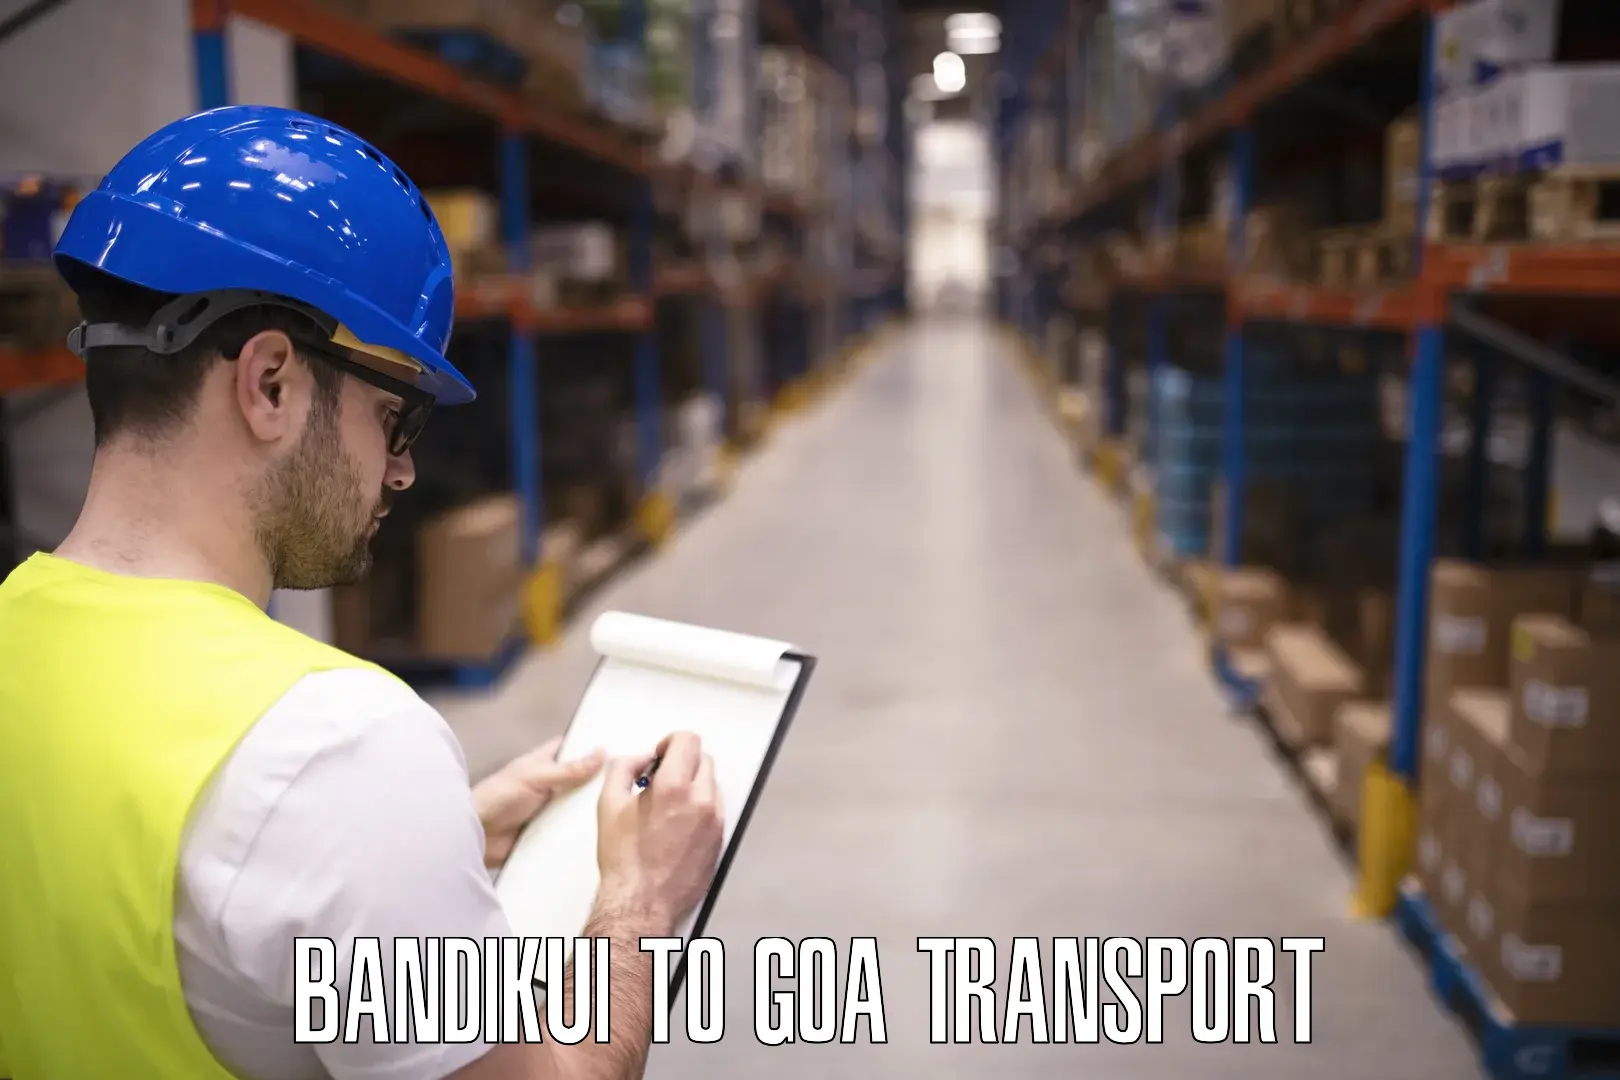 Nearby transport service Bandikui to Goa